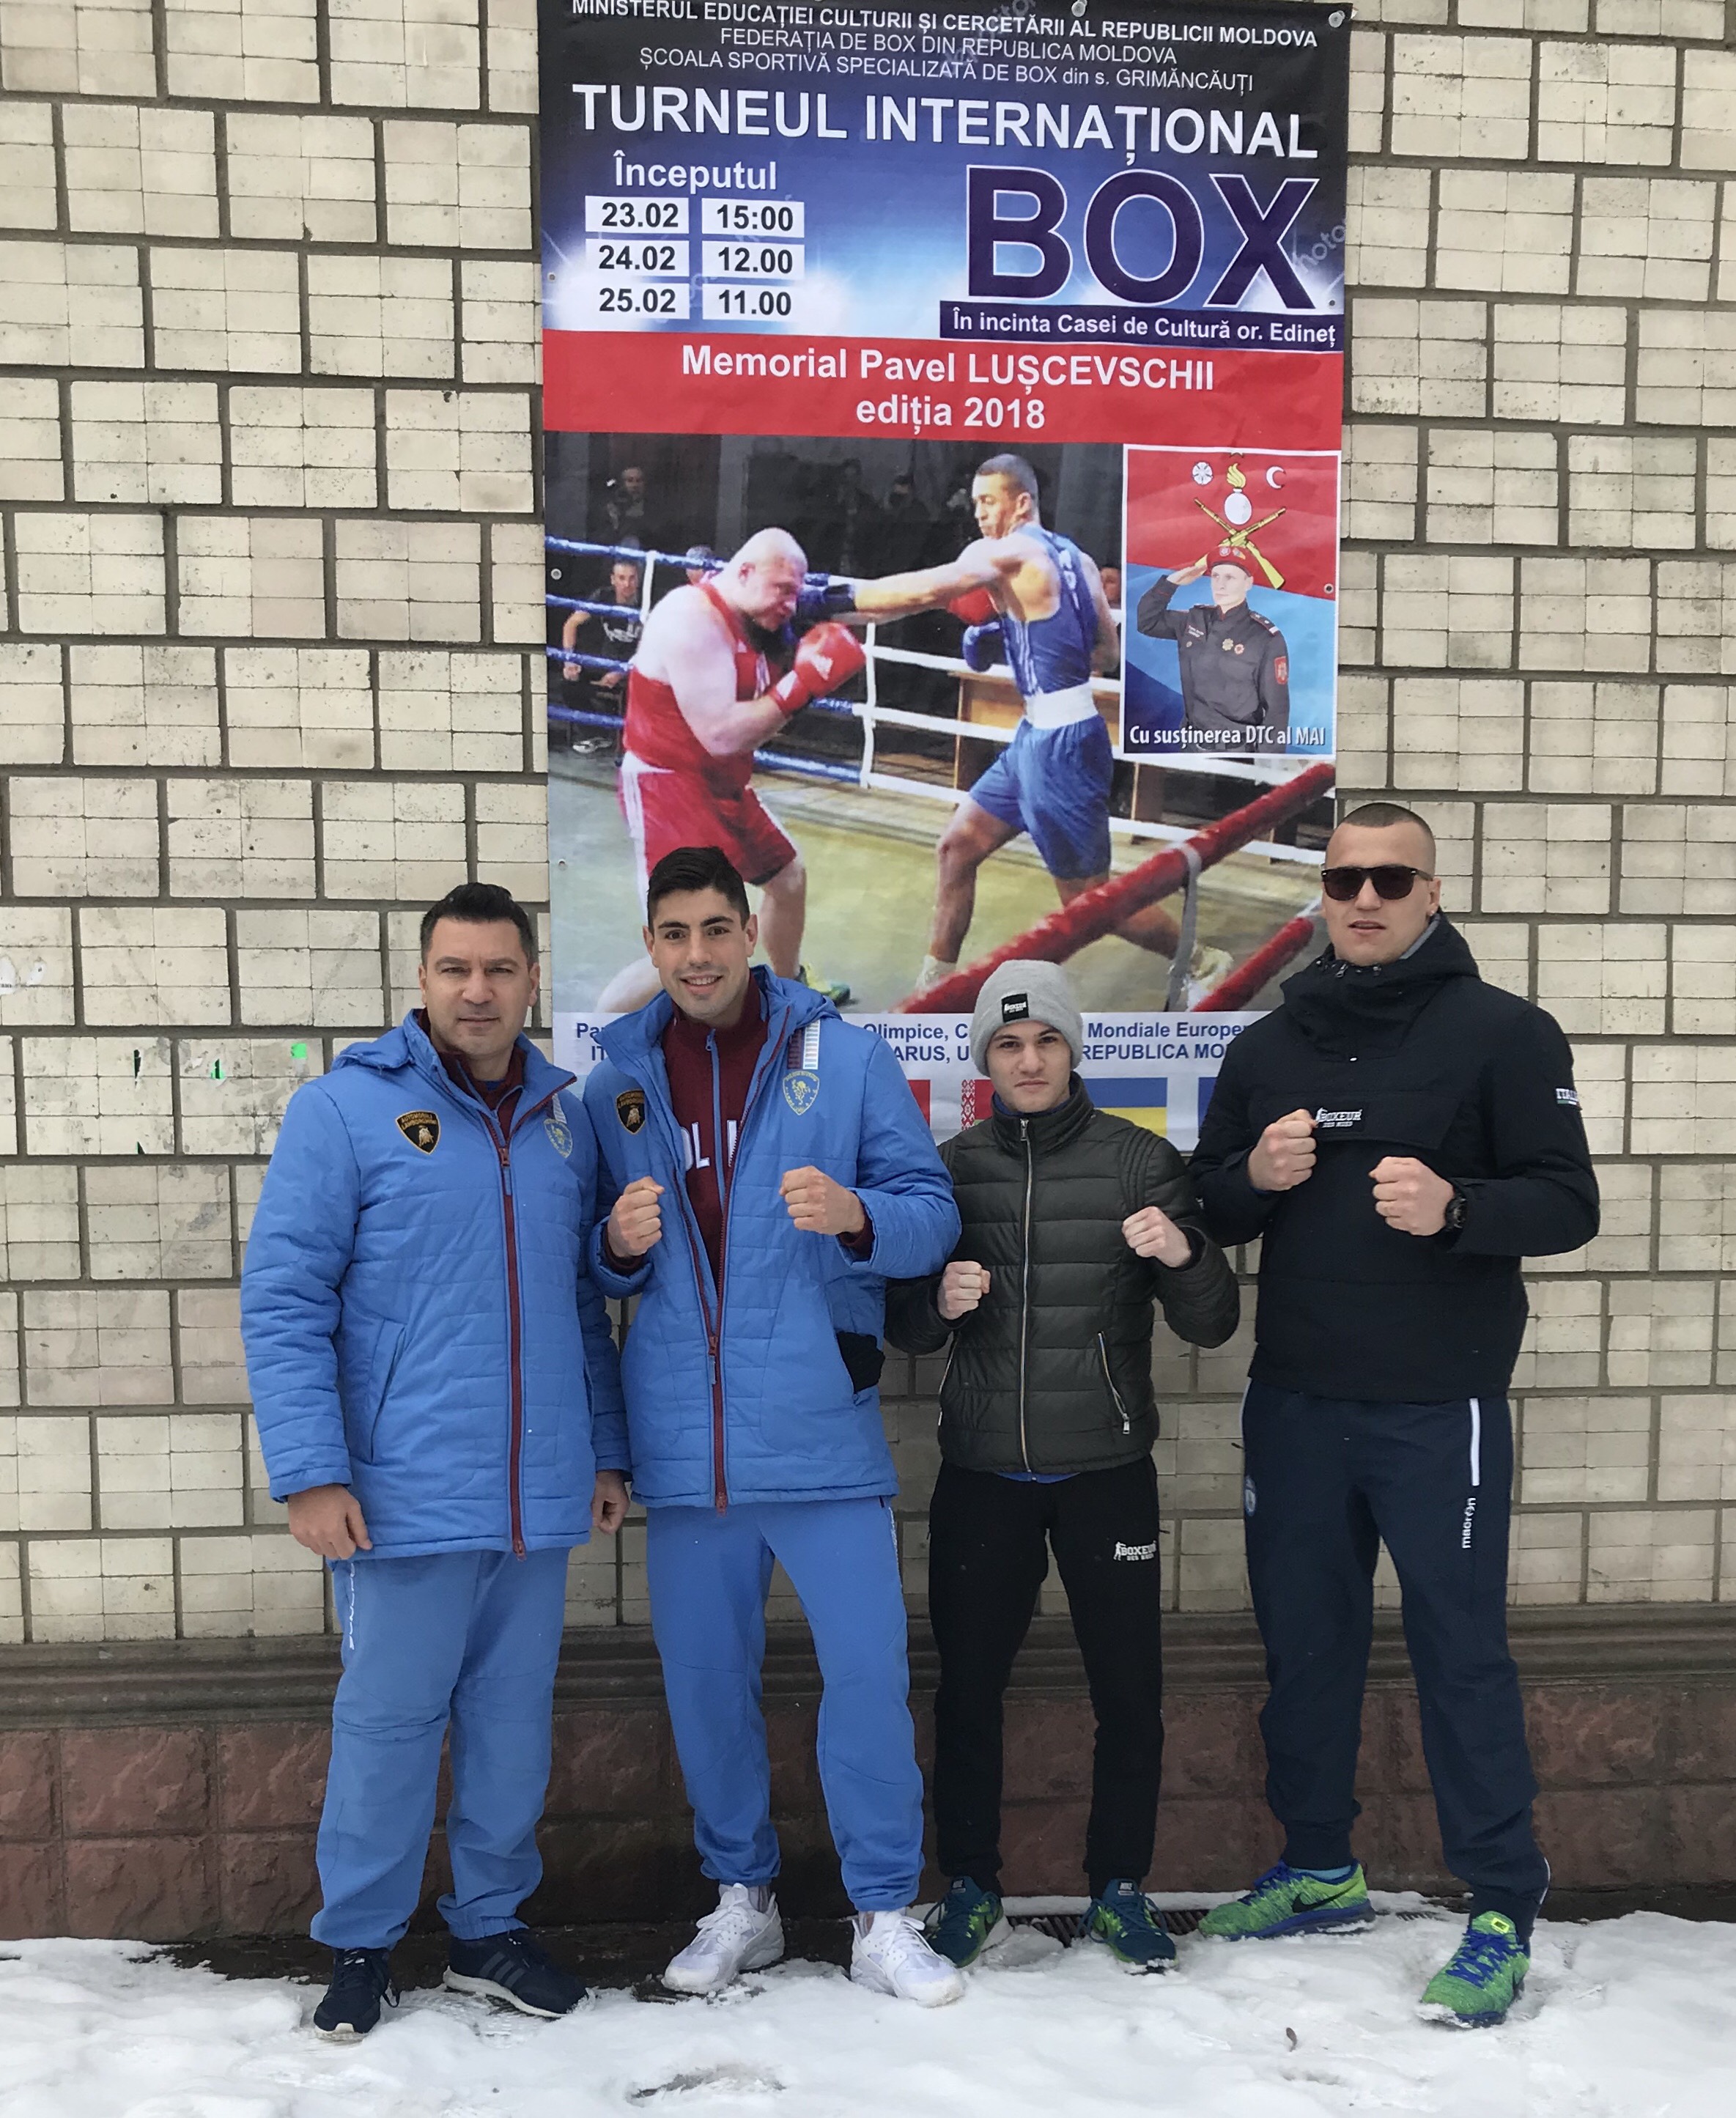 Team Italiano in Moldavia per partecipare al Torneo Luscevschili